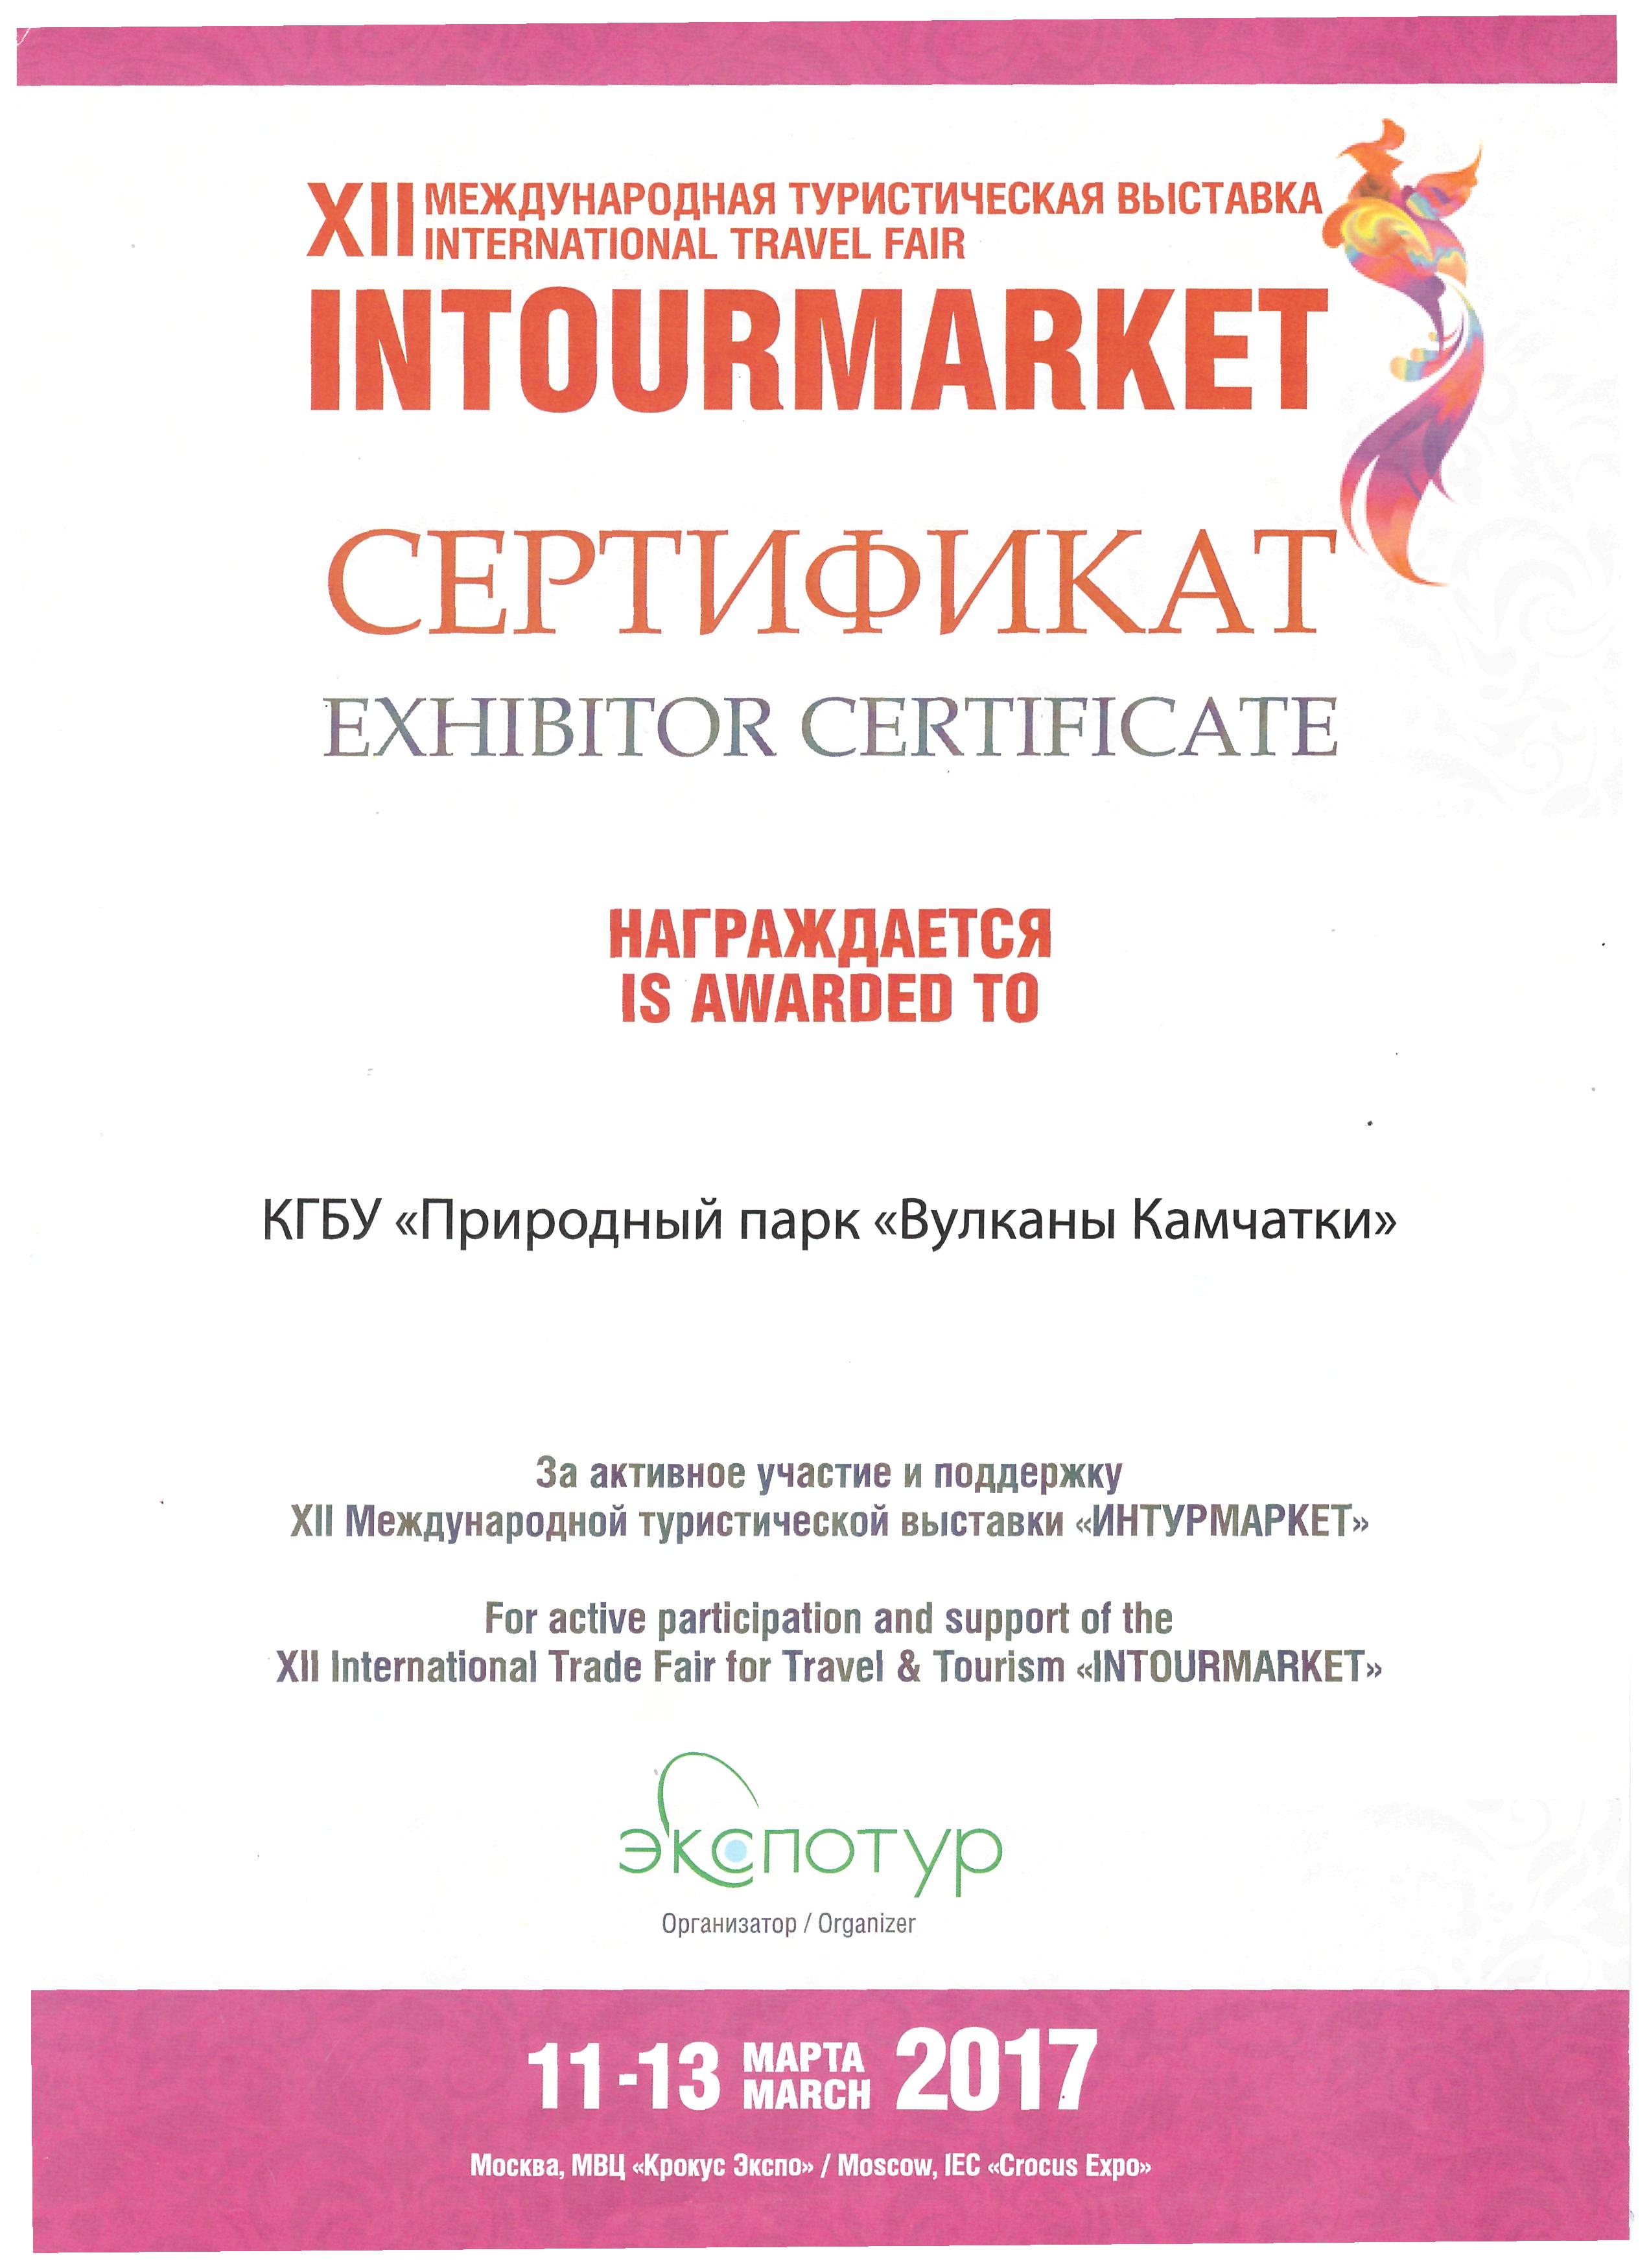 Сертификат за участие в ХII международной турвыставке "Интурмаркет", 2017 год